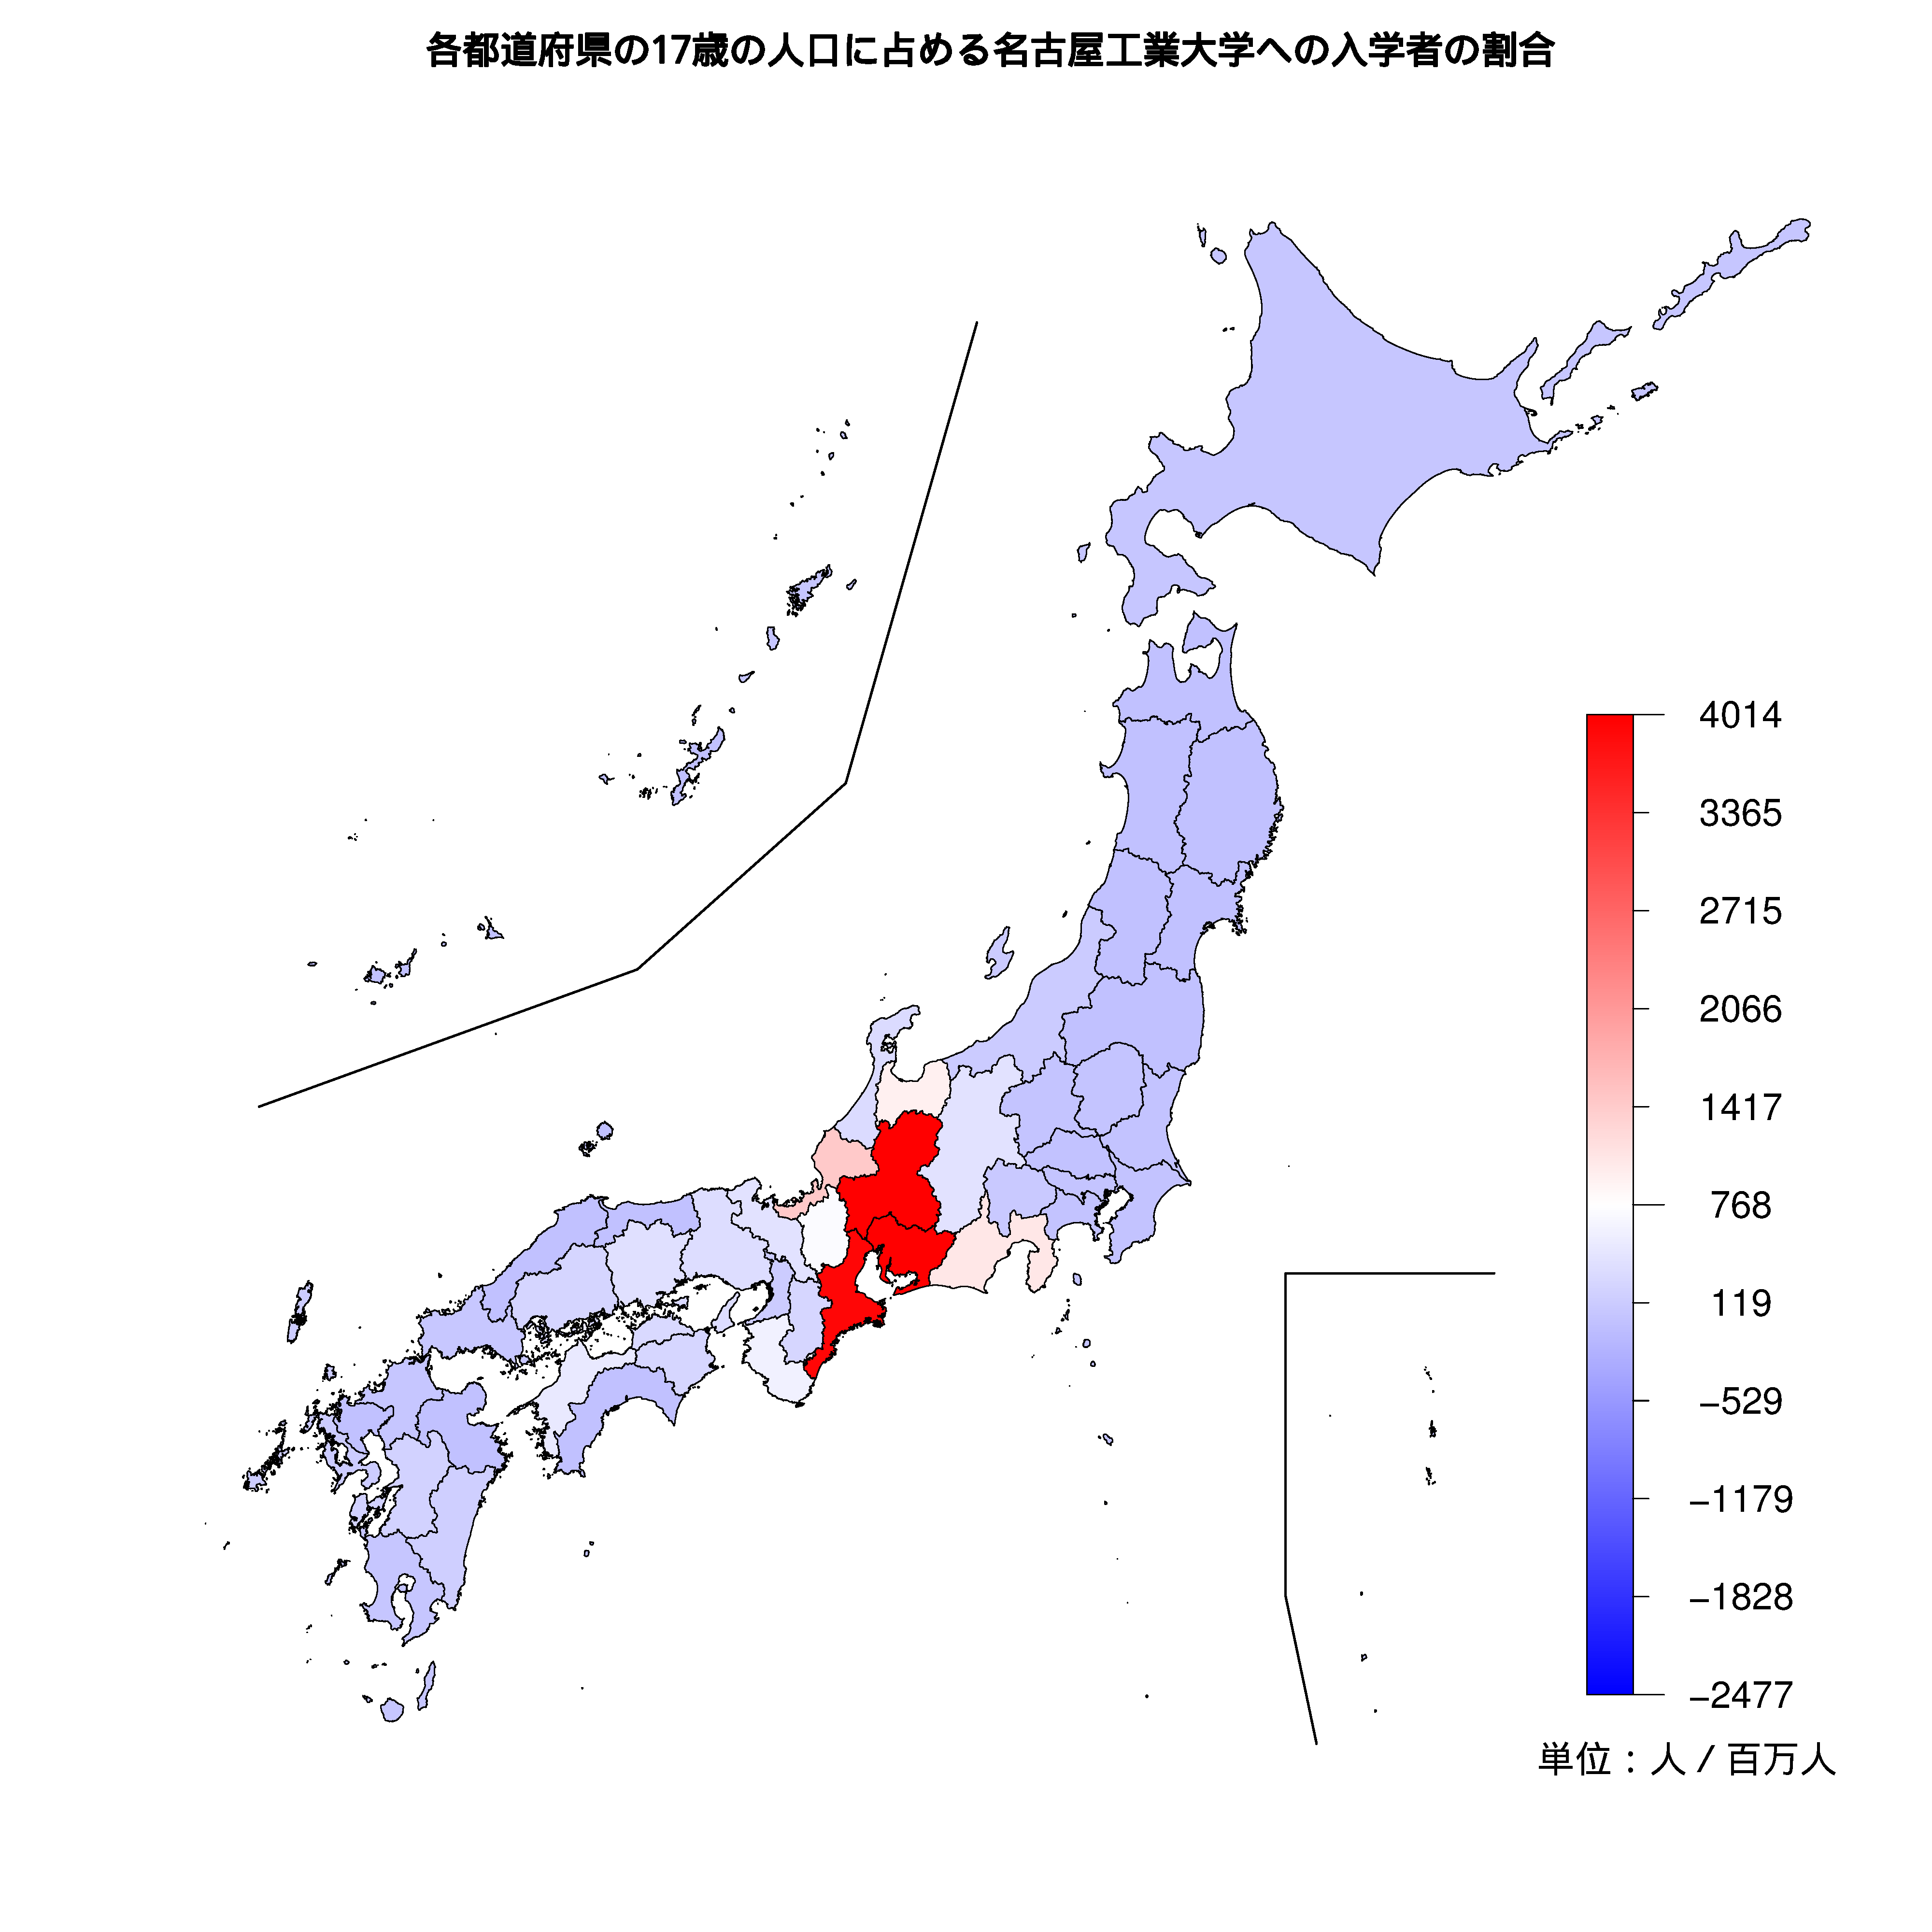 名古屋工業大学への入学者が多い都道府県の色分け地図